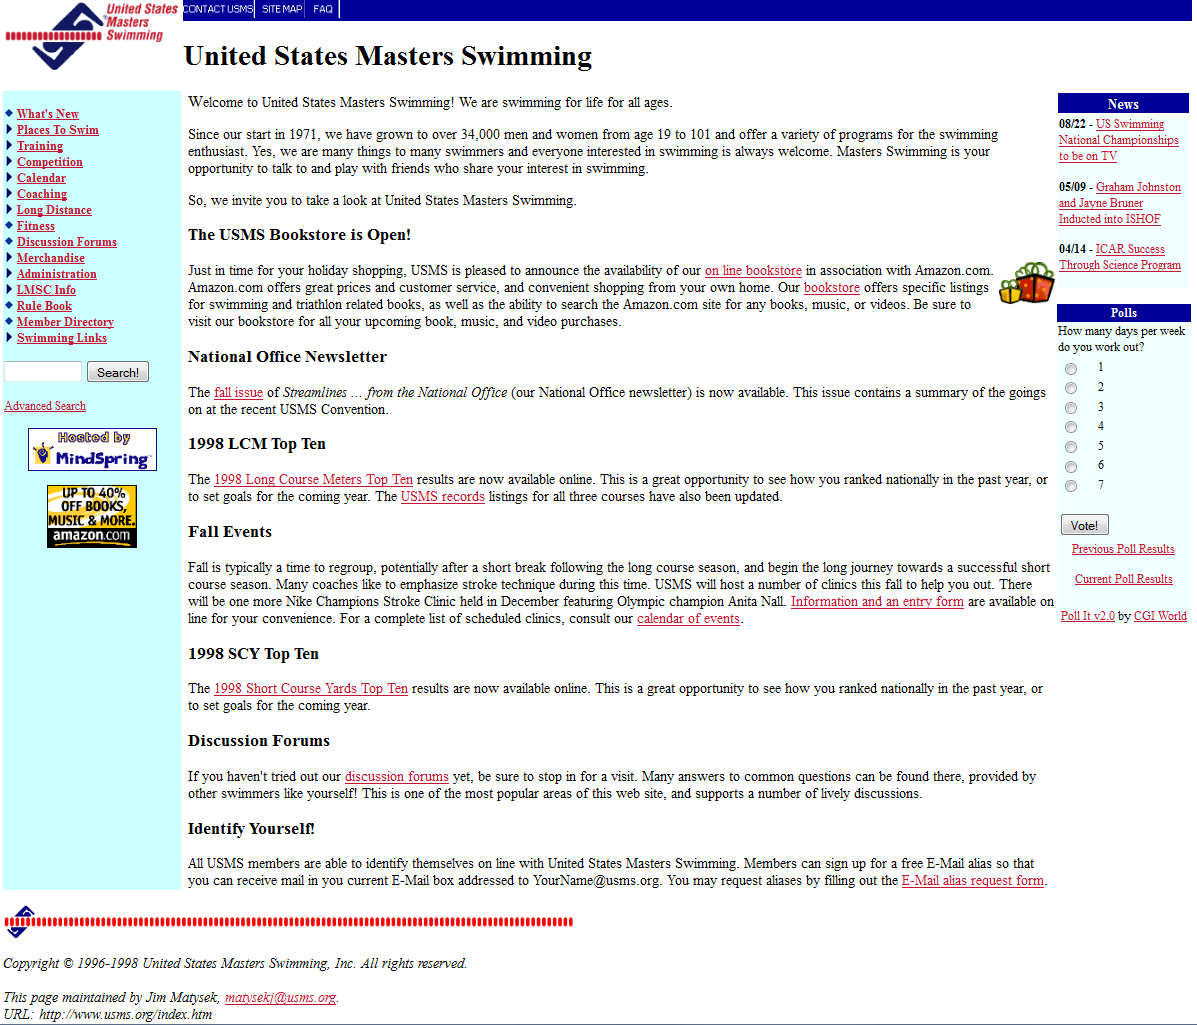 December, 1998 USMS website